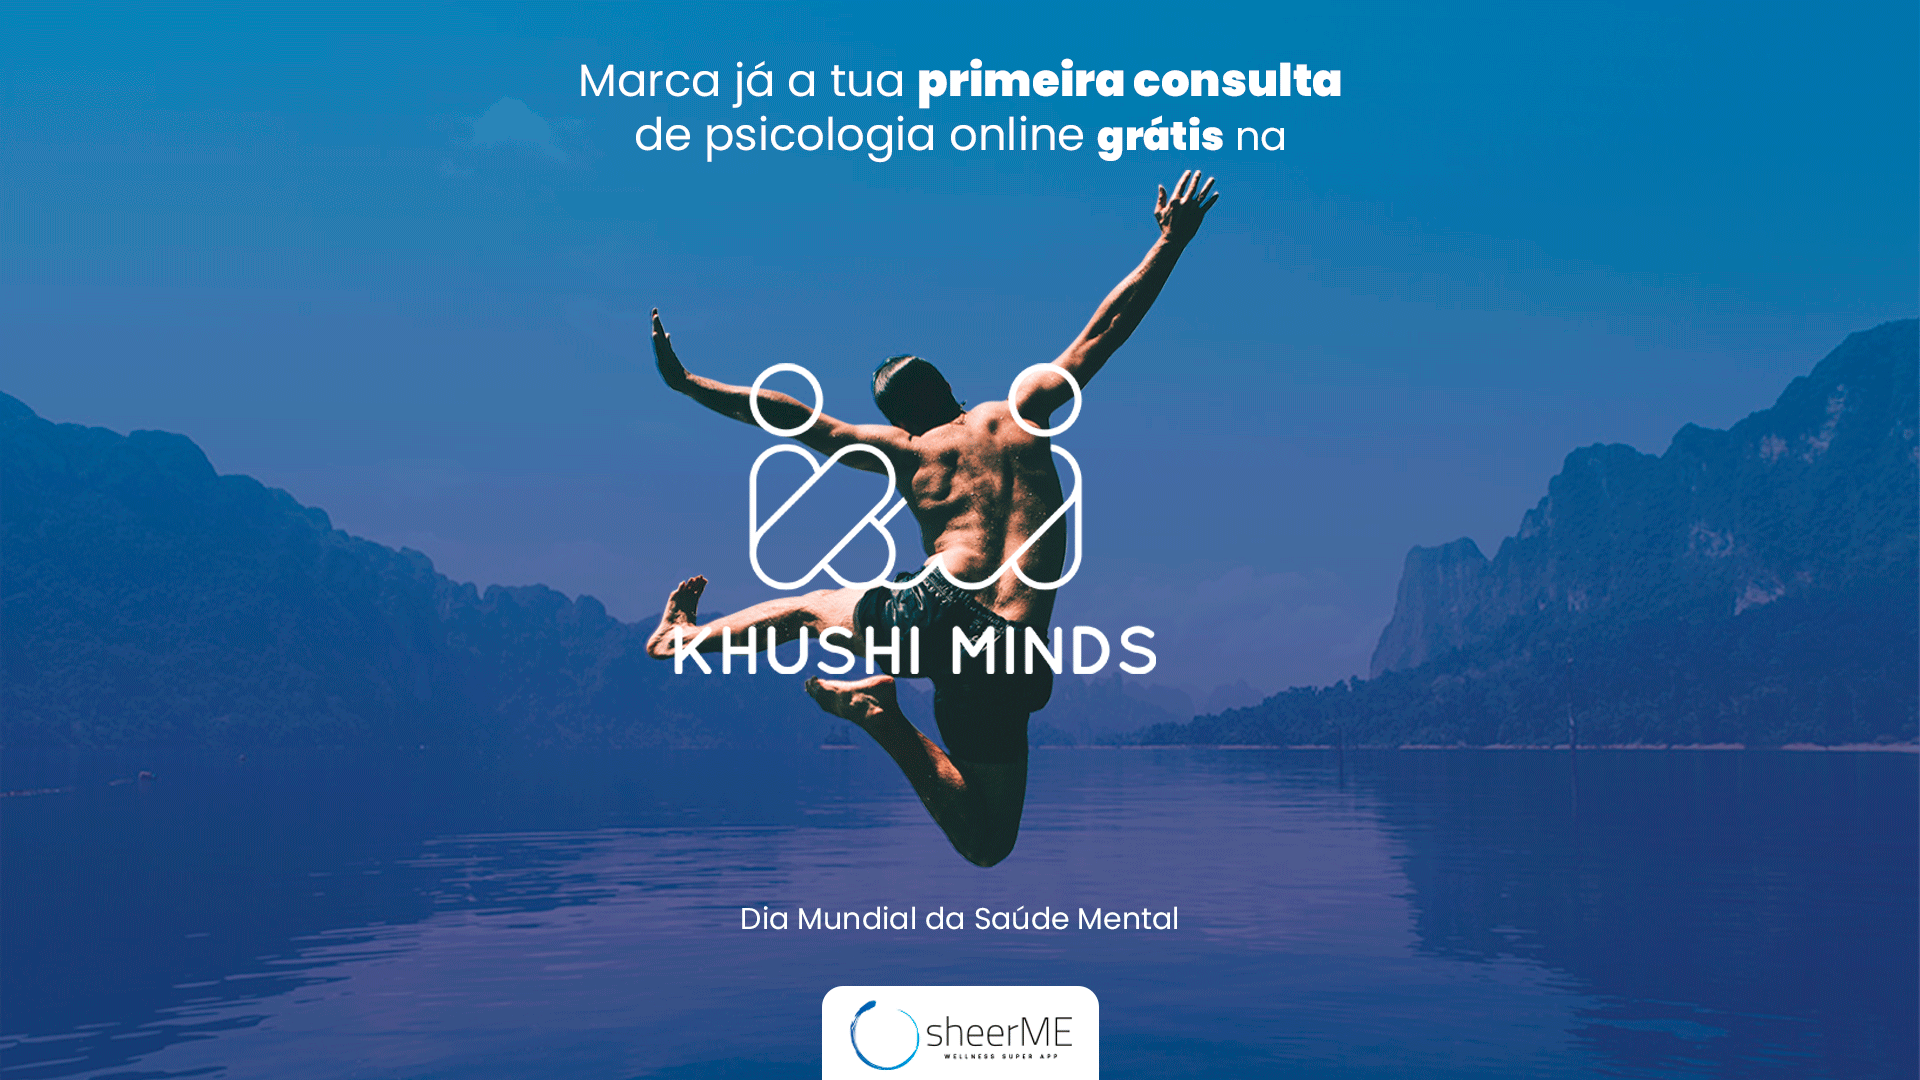 Conhece a Khushi Minds e marca já a tua primeira consulta de psicologia online grátis!